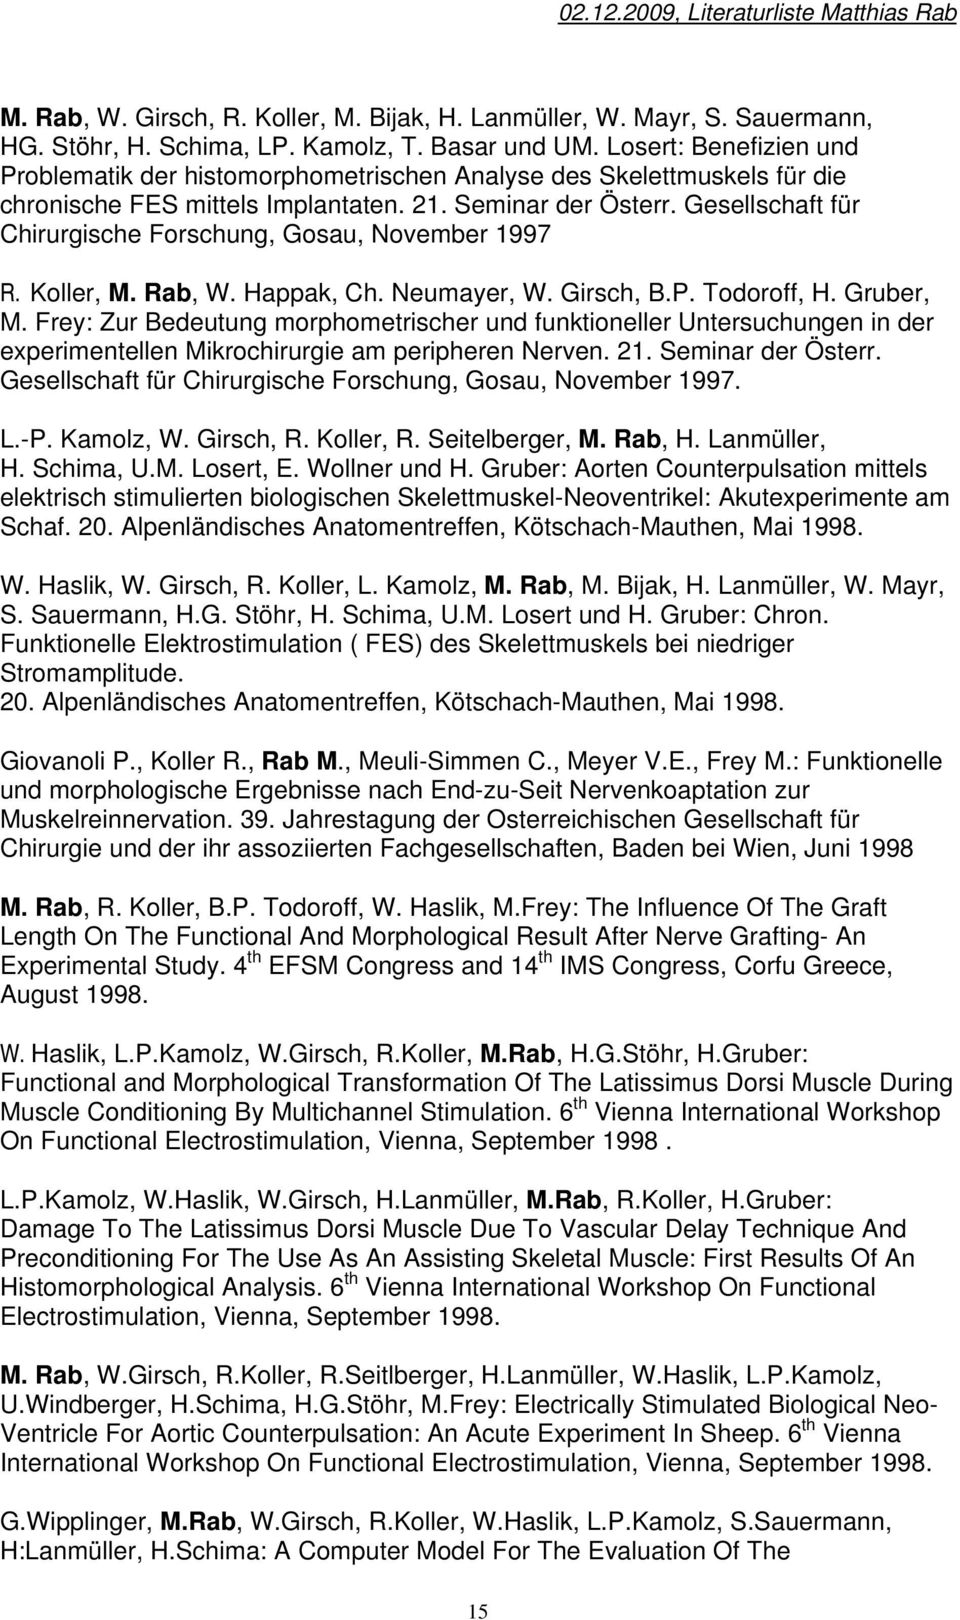 Gesellschaft für Chirurgische Forschung, Gosau, November 1997 R. Koller, M. Rab, W. Happak, Ch. Neumayer, W. Girsch, B.P. Todoroff, H. Gruber, M.